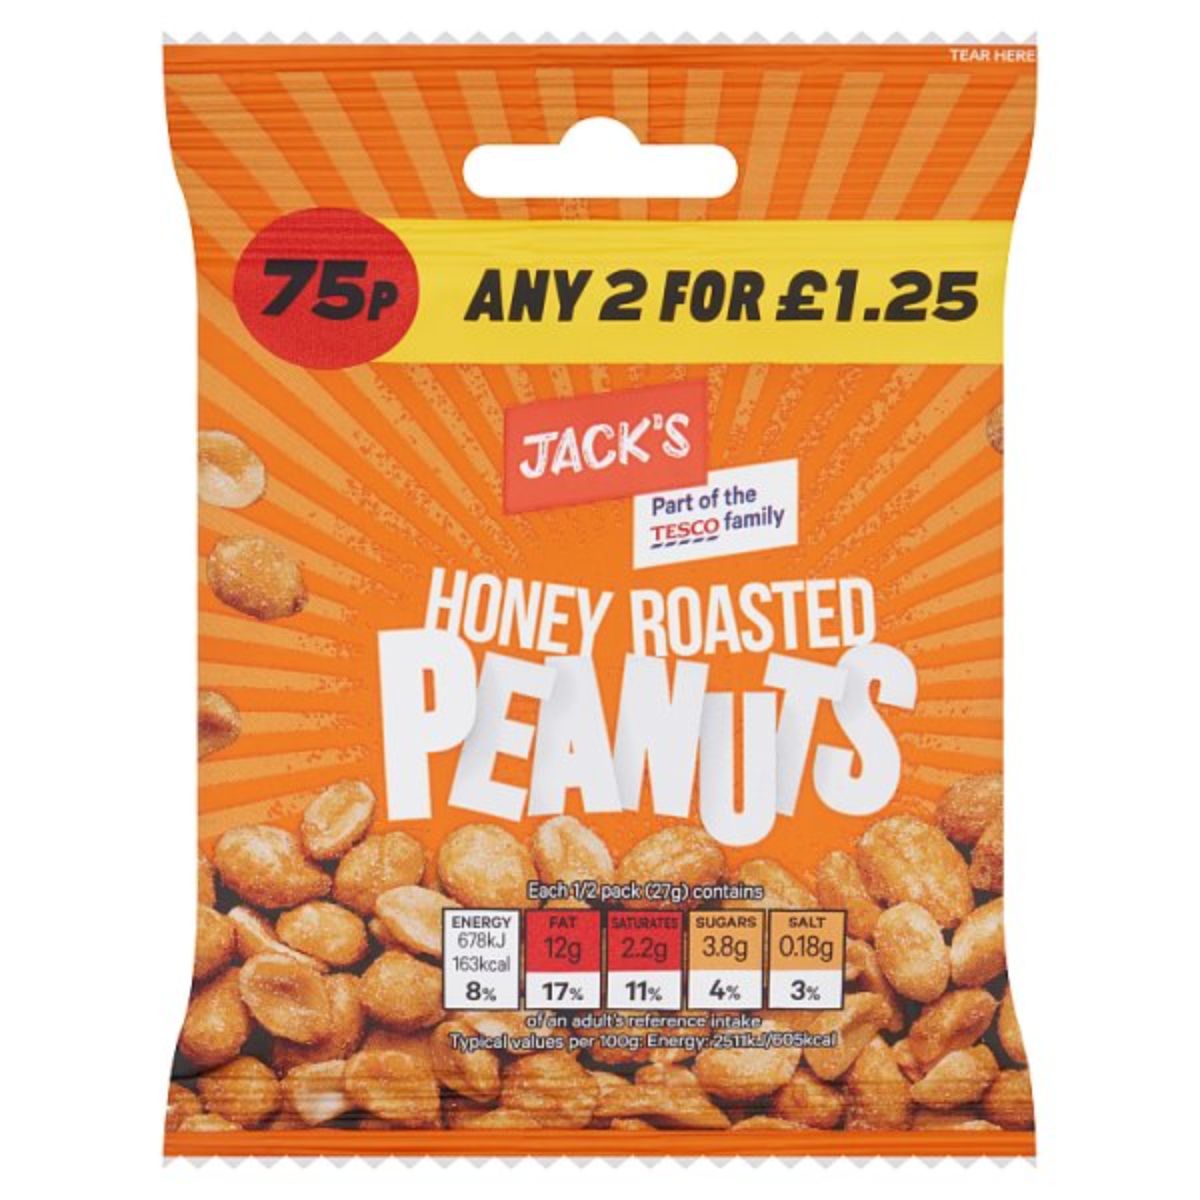 Jacks - Honey Roasted Peanuts - 55g's honey roasted peanuts.